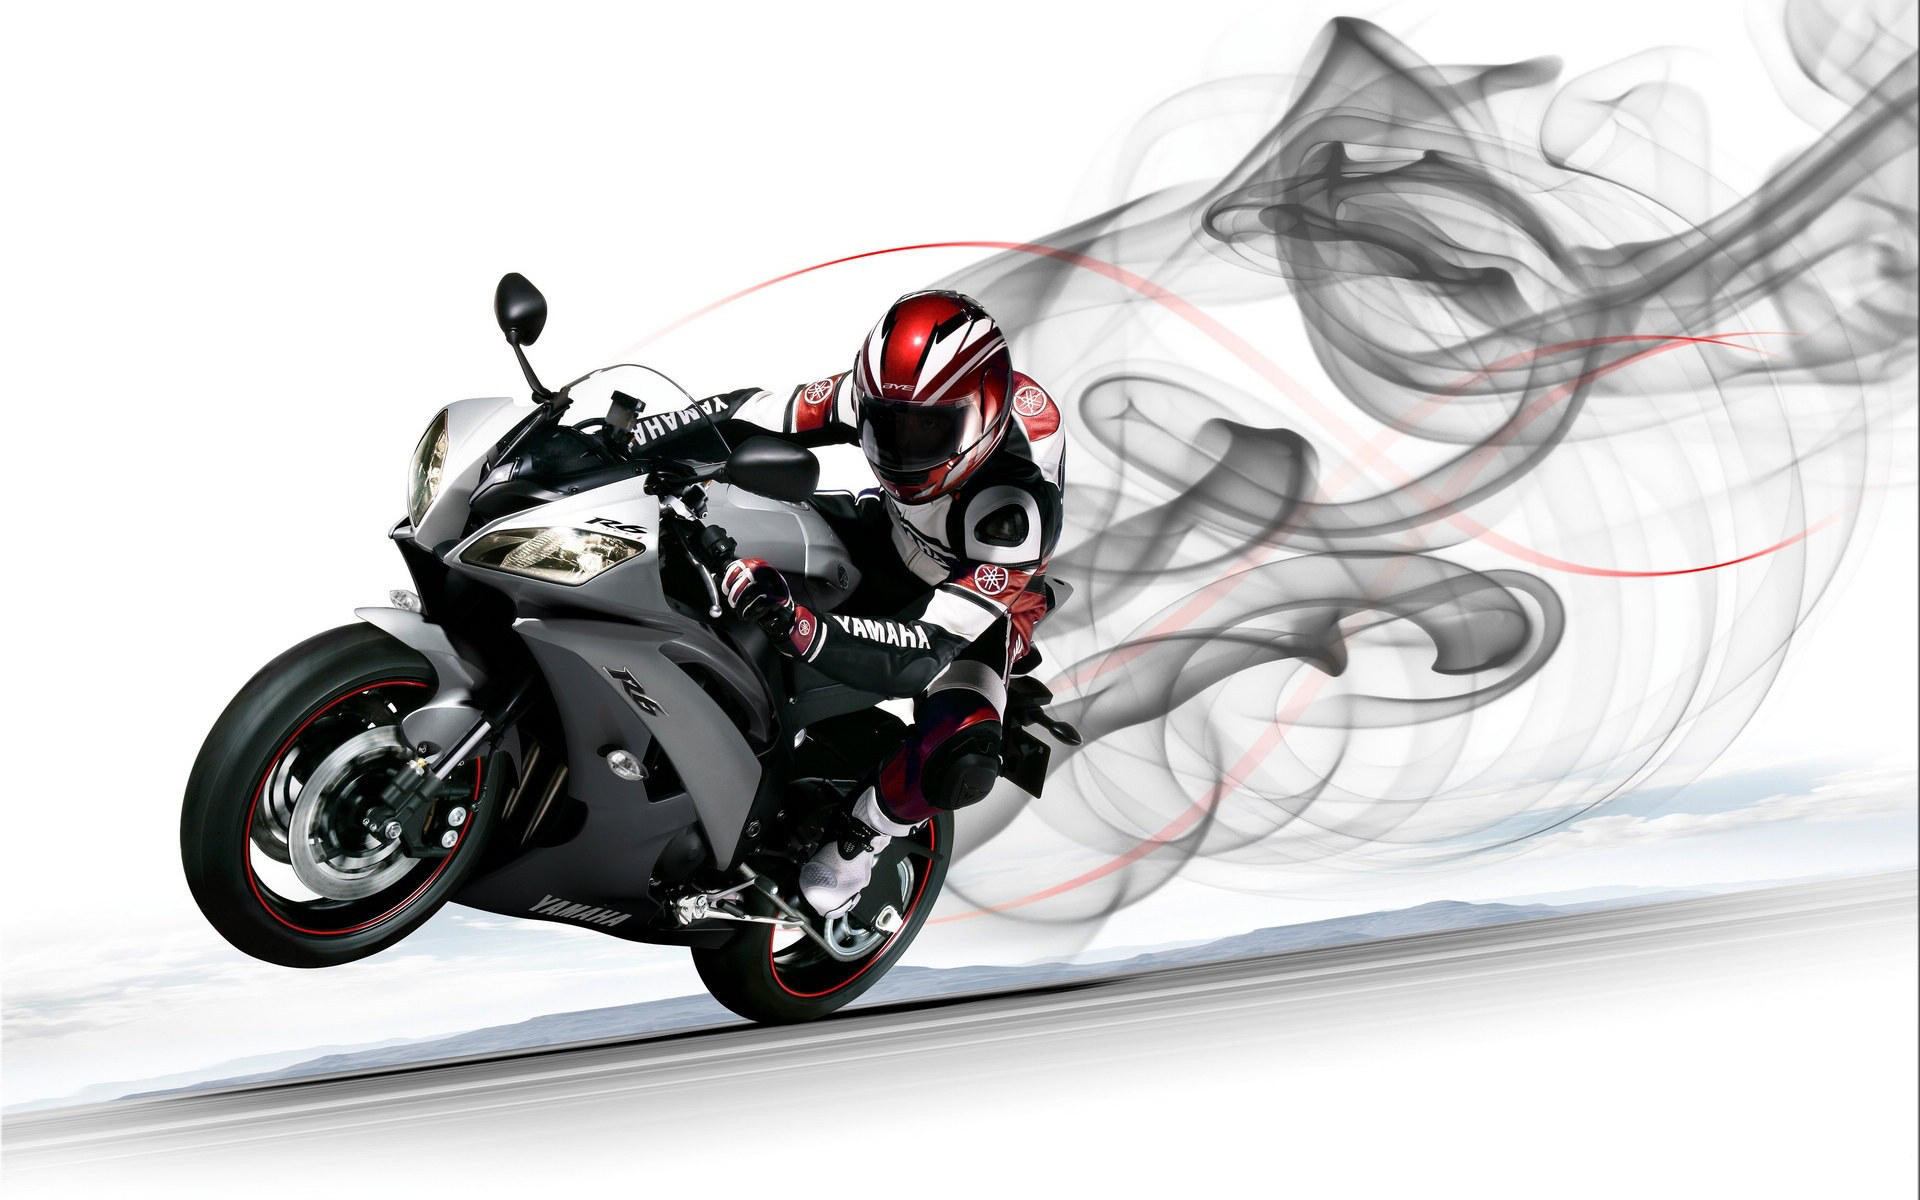 fond d'écran vélo hd 1920x1200,superbike racing,moto,véhicule à moteur,véhicule,faire de la moto